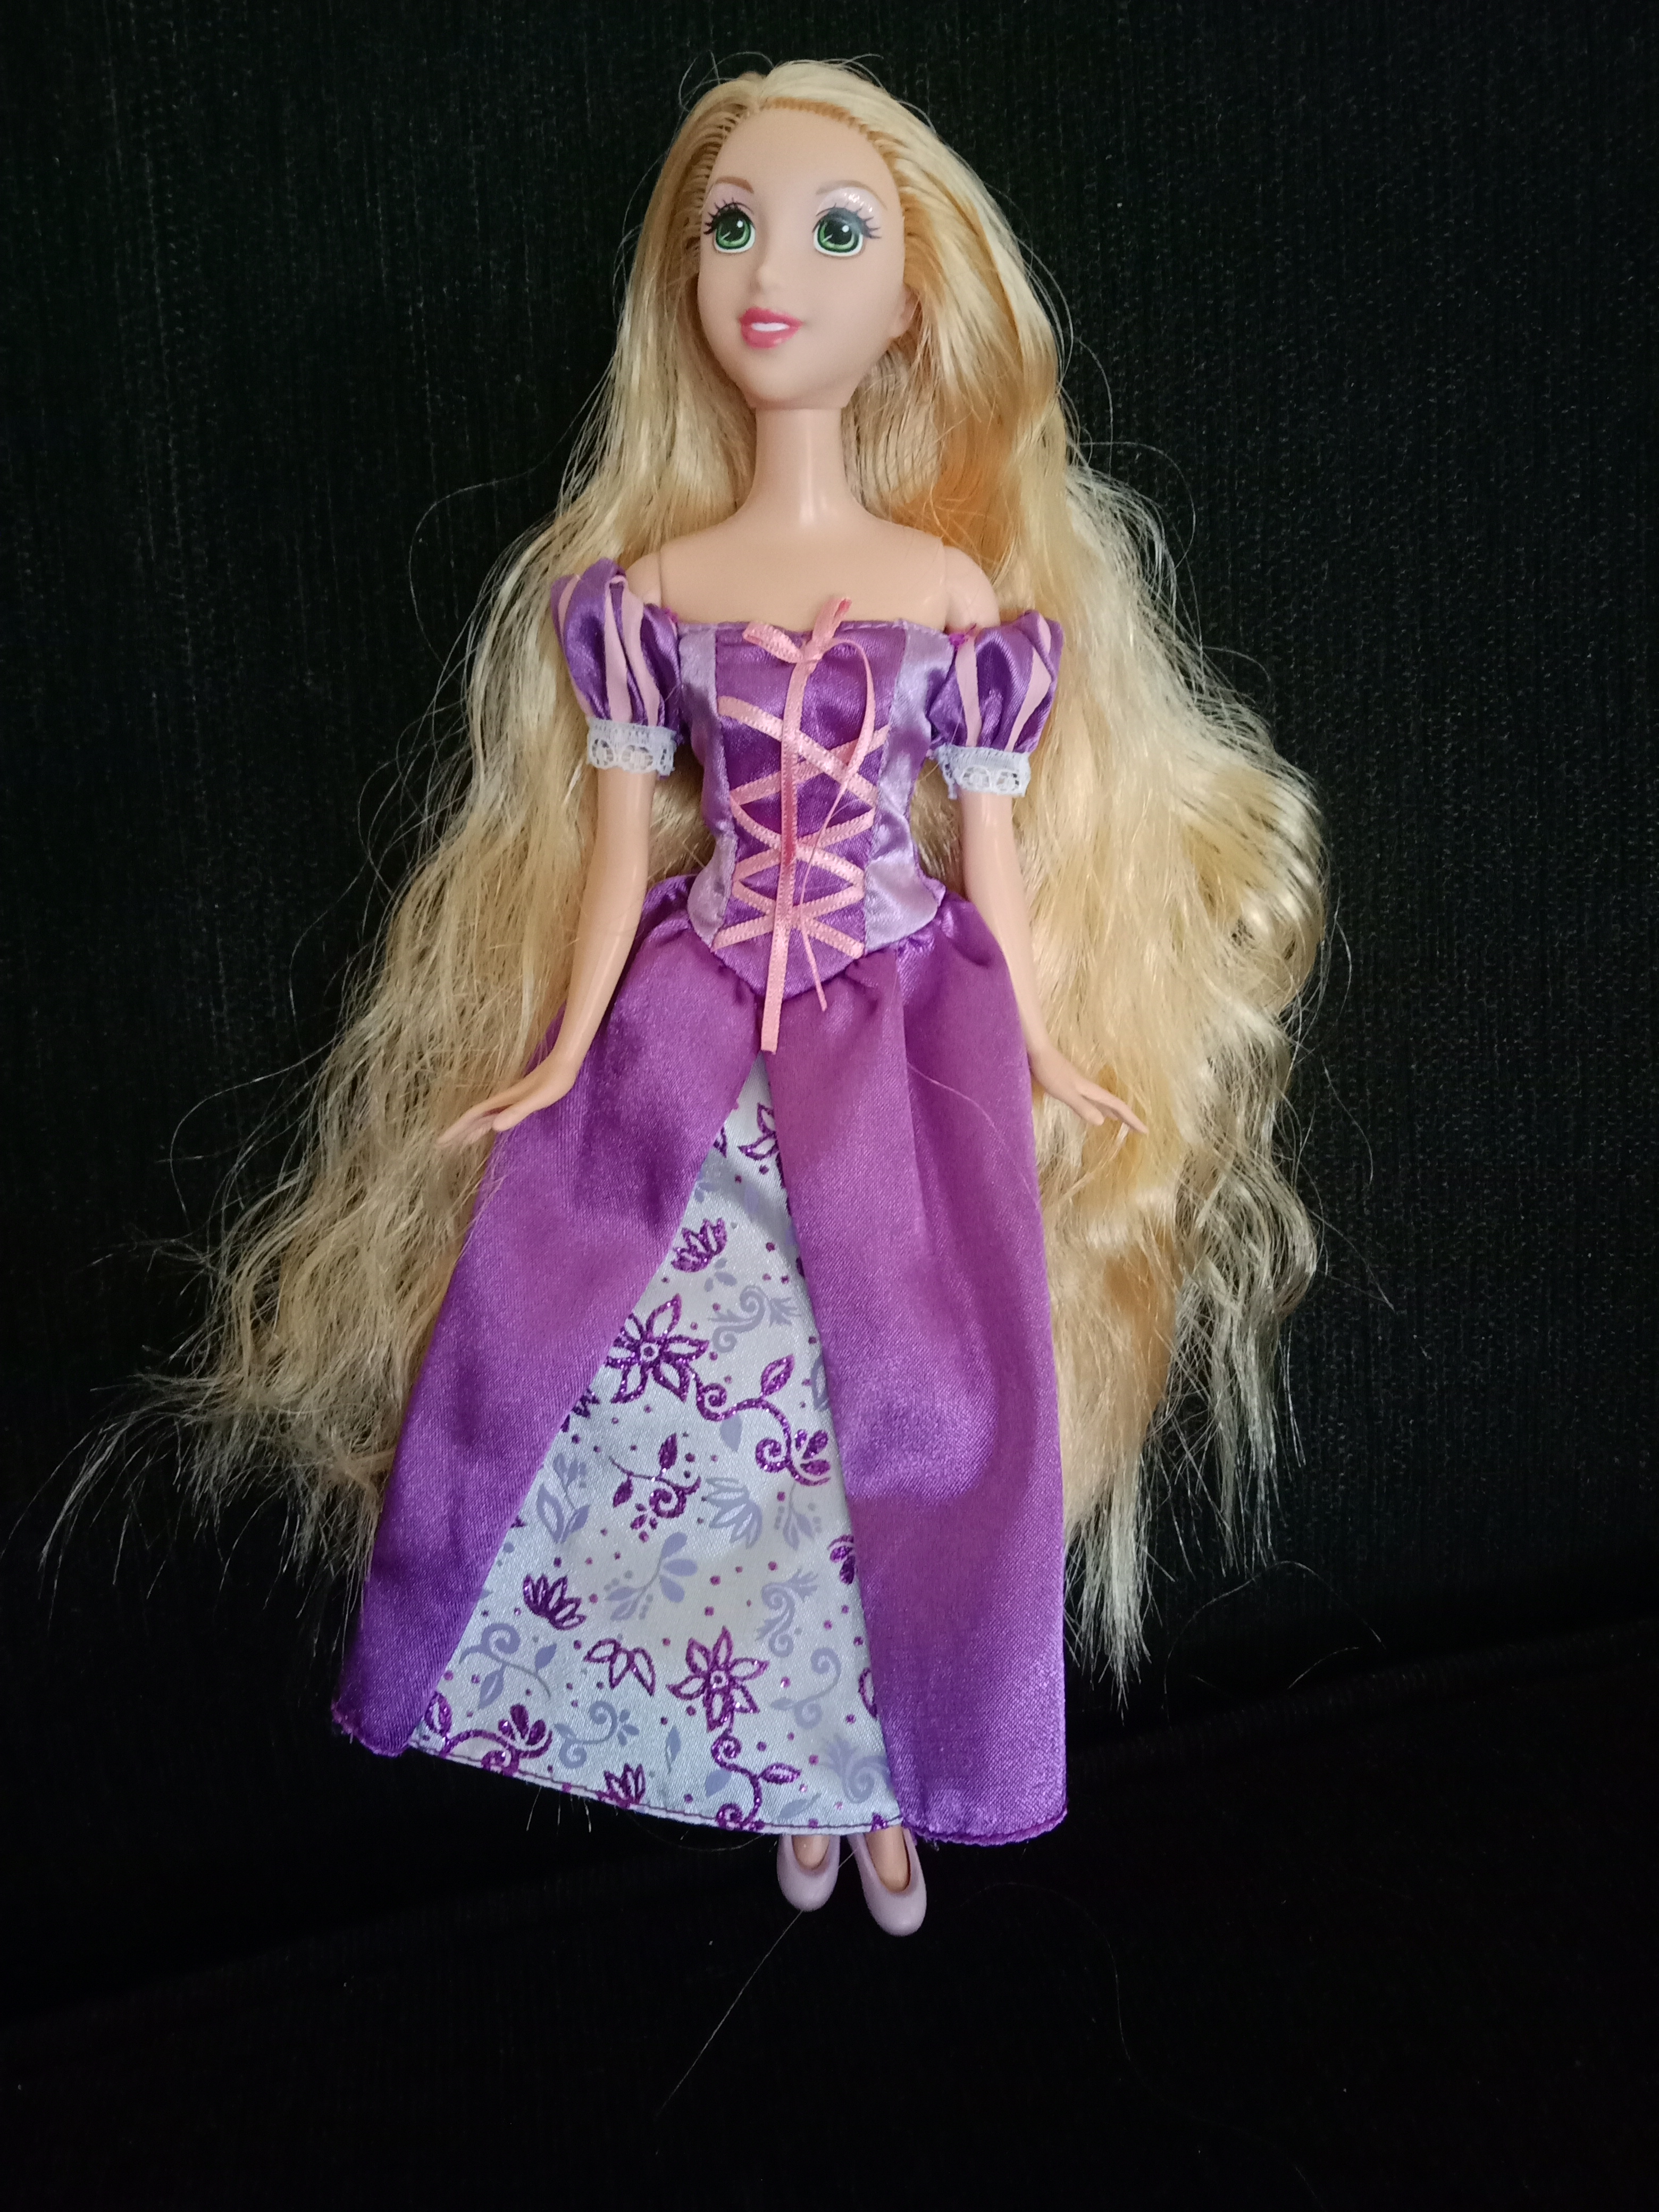 2009 Mattel Rapunzel Doll